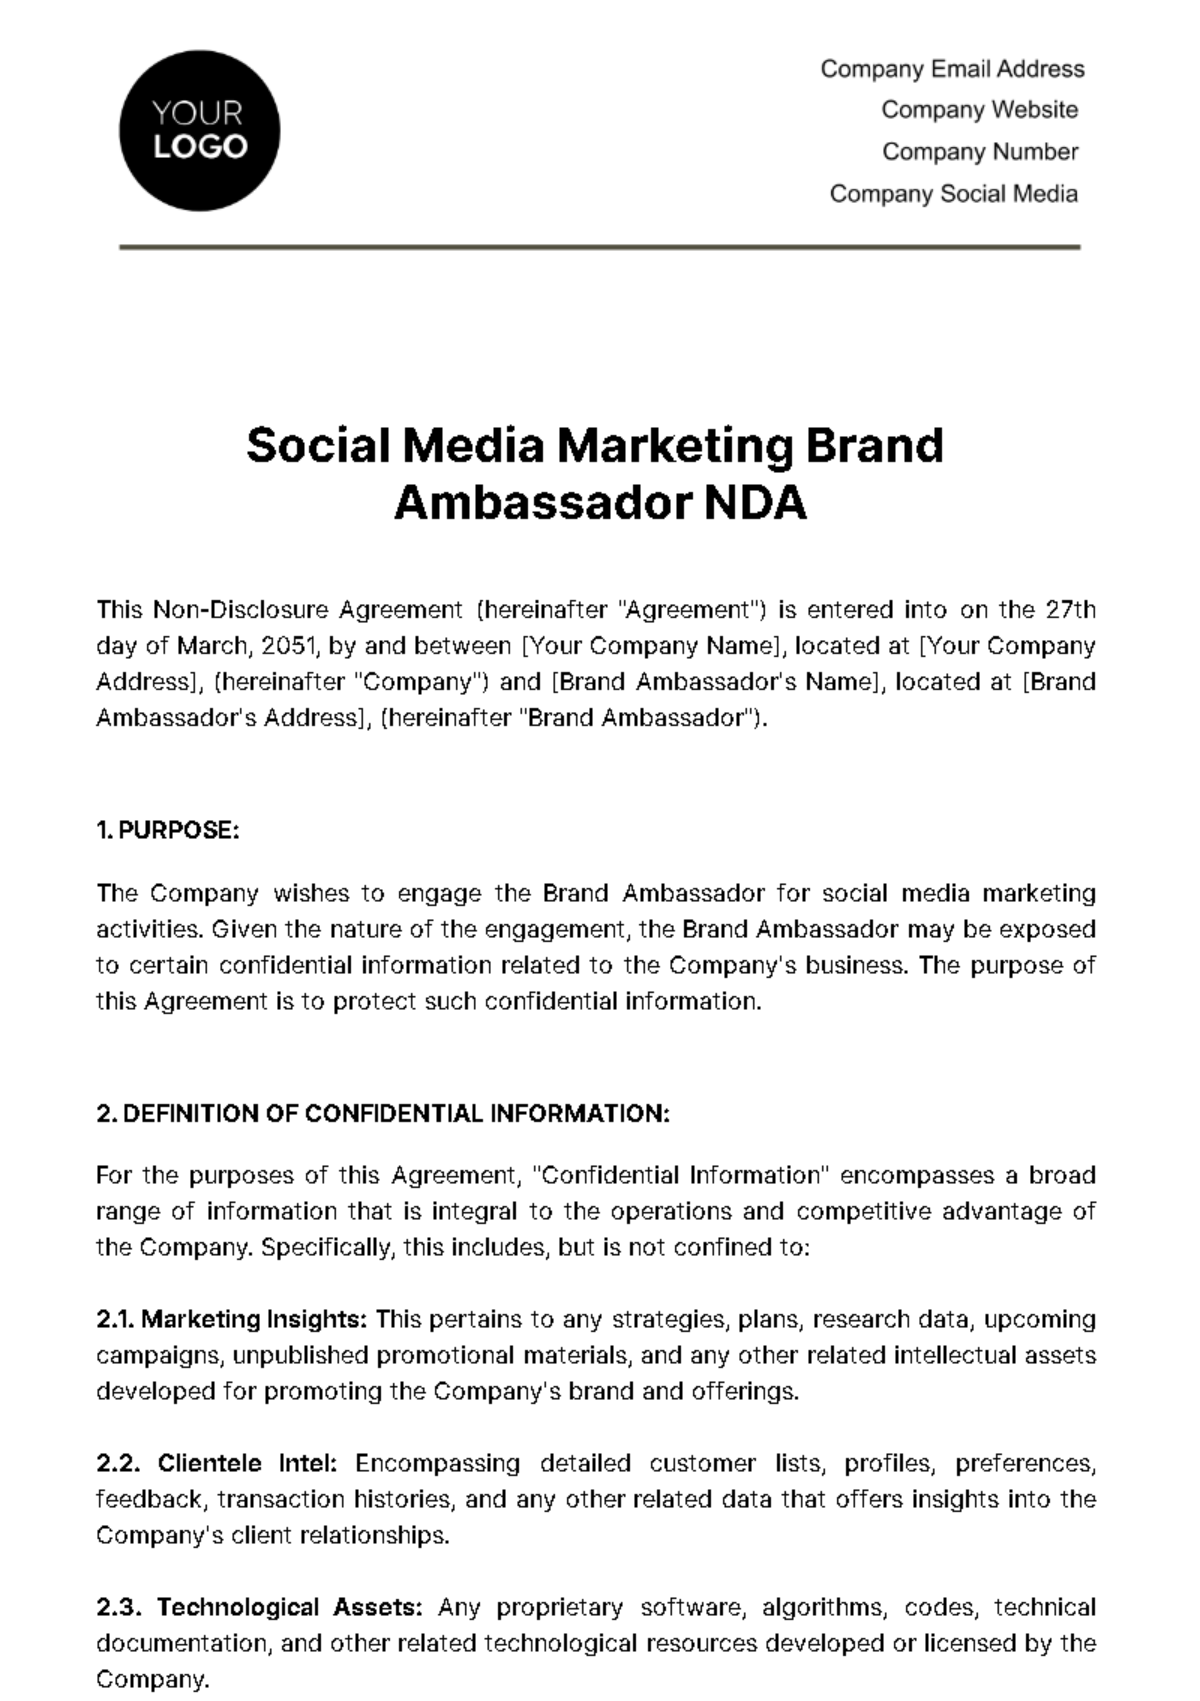 Social Media Marketing Brand Ambassador NDA Template